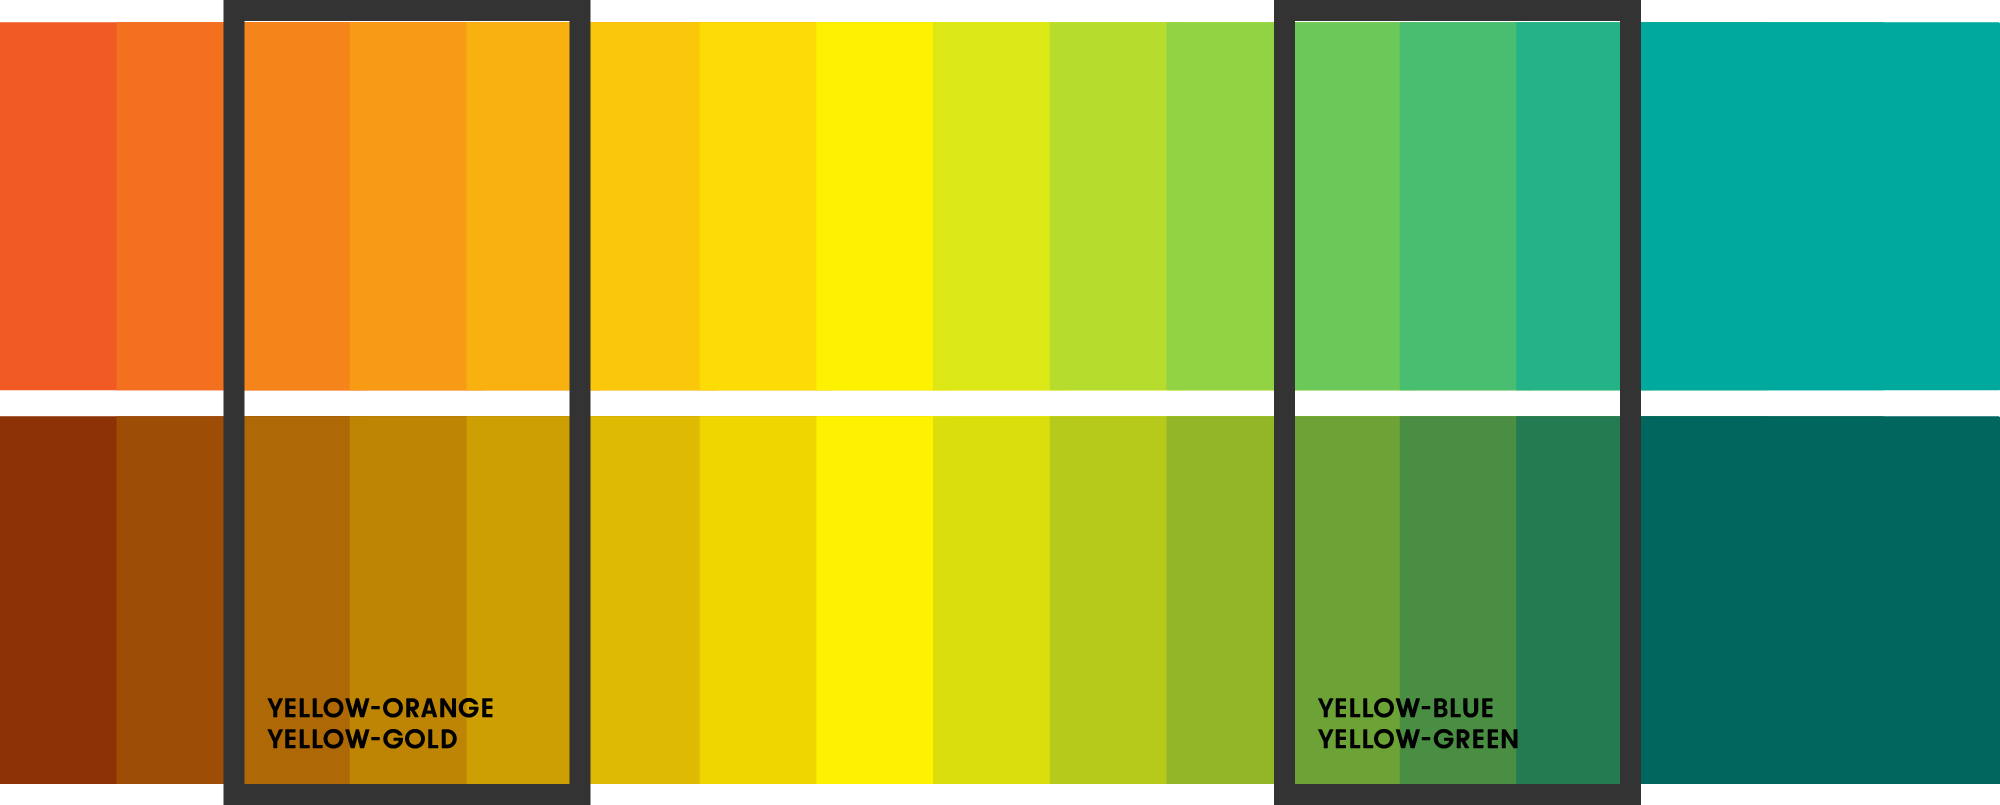 yellow-orange, yellow-gold, yellow-green